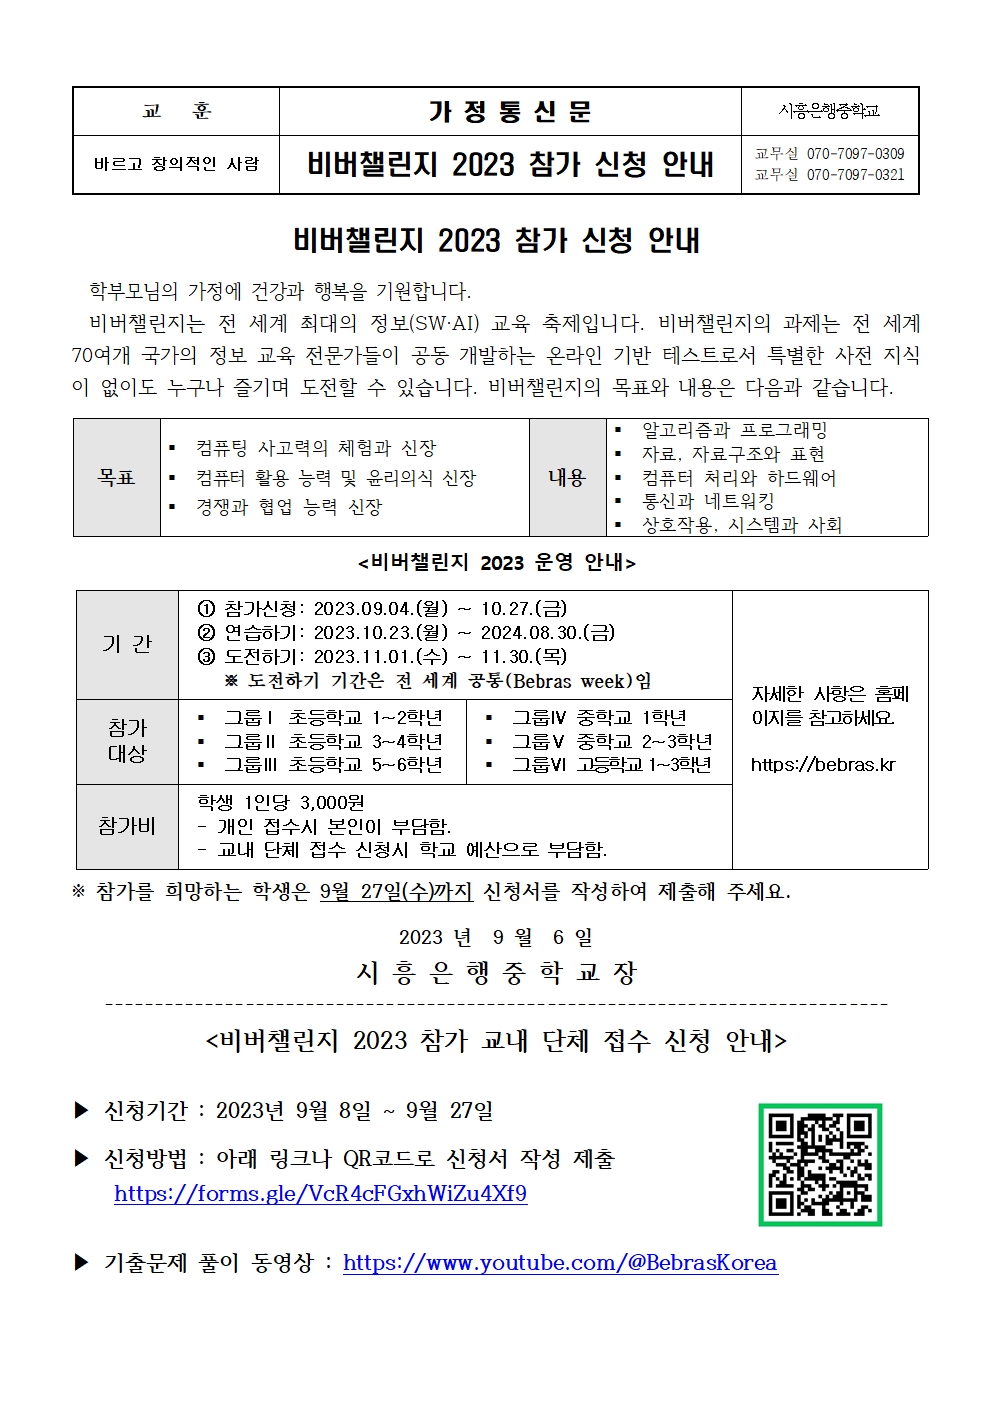 [일반] 비버챌린지 2023 참가 신청 안내 가정통신문의 첨부이미지 1